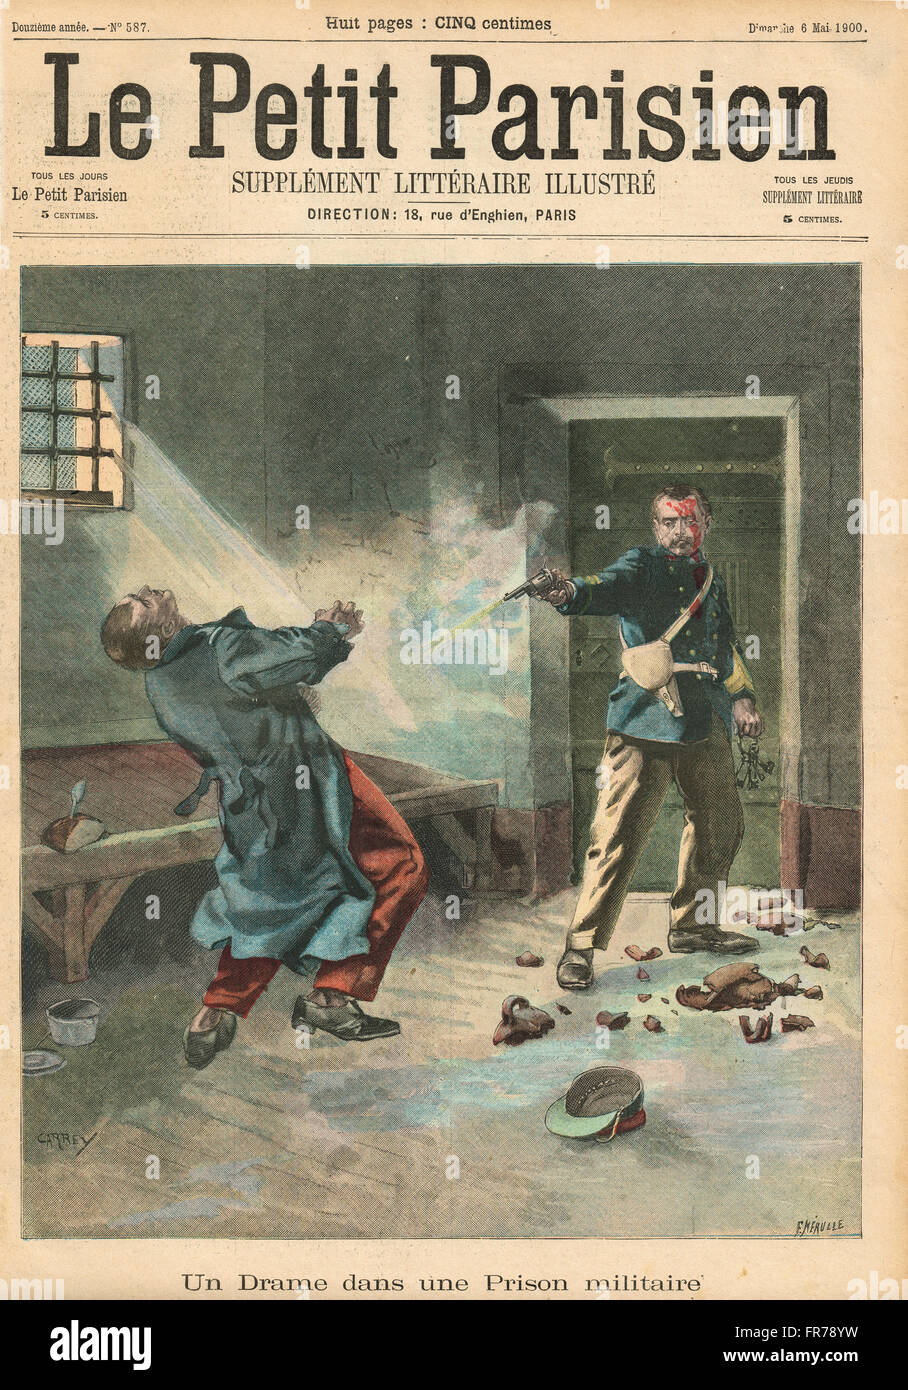 Prisonnier militaire abattu Nantes 1900. Illustration du petit parisien dans le journal français illustré Banque D'Images